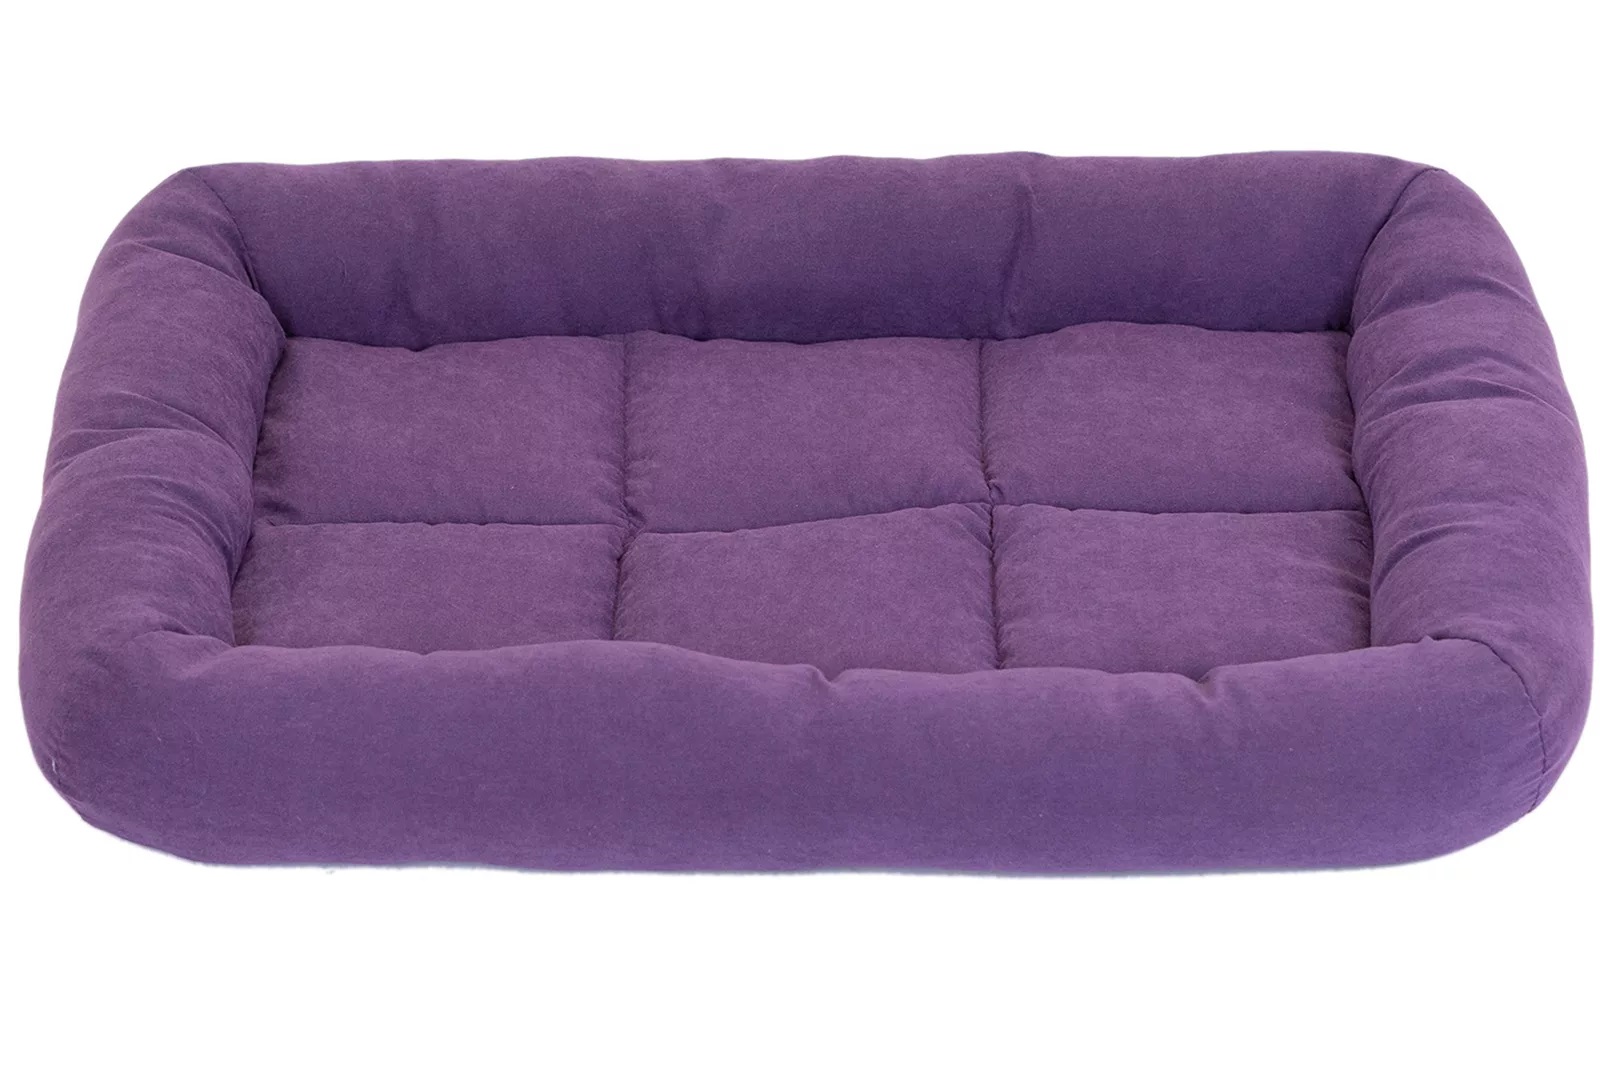 Лежанка прямоугольная фиолетовая Дарэленд батут-бархат с валиком, пух, периотек 69х49х8см №3